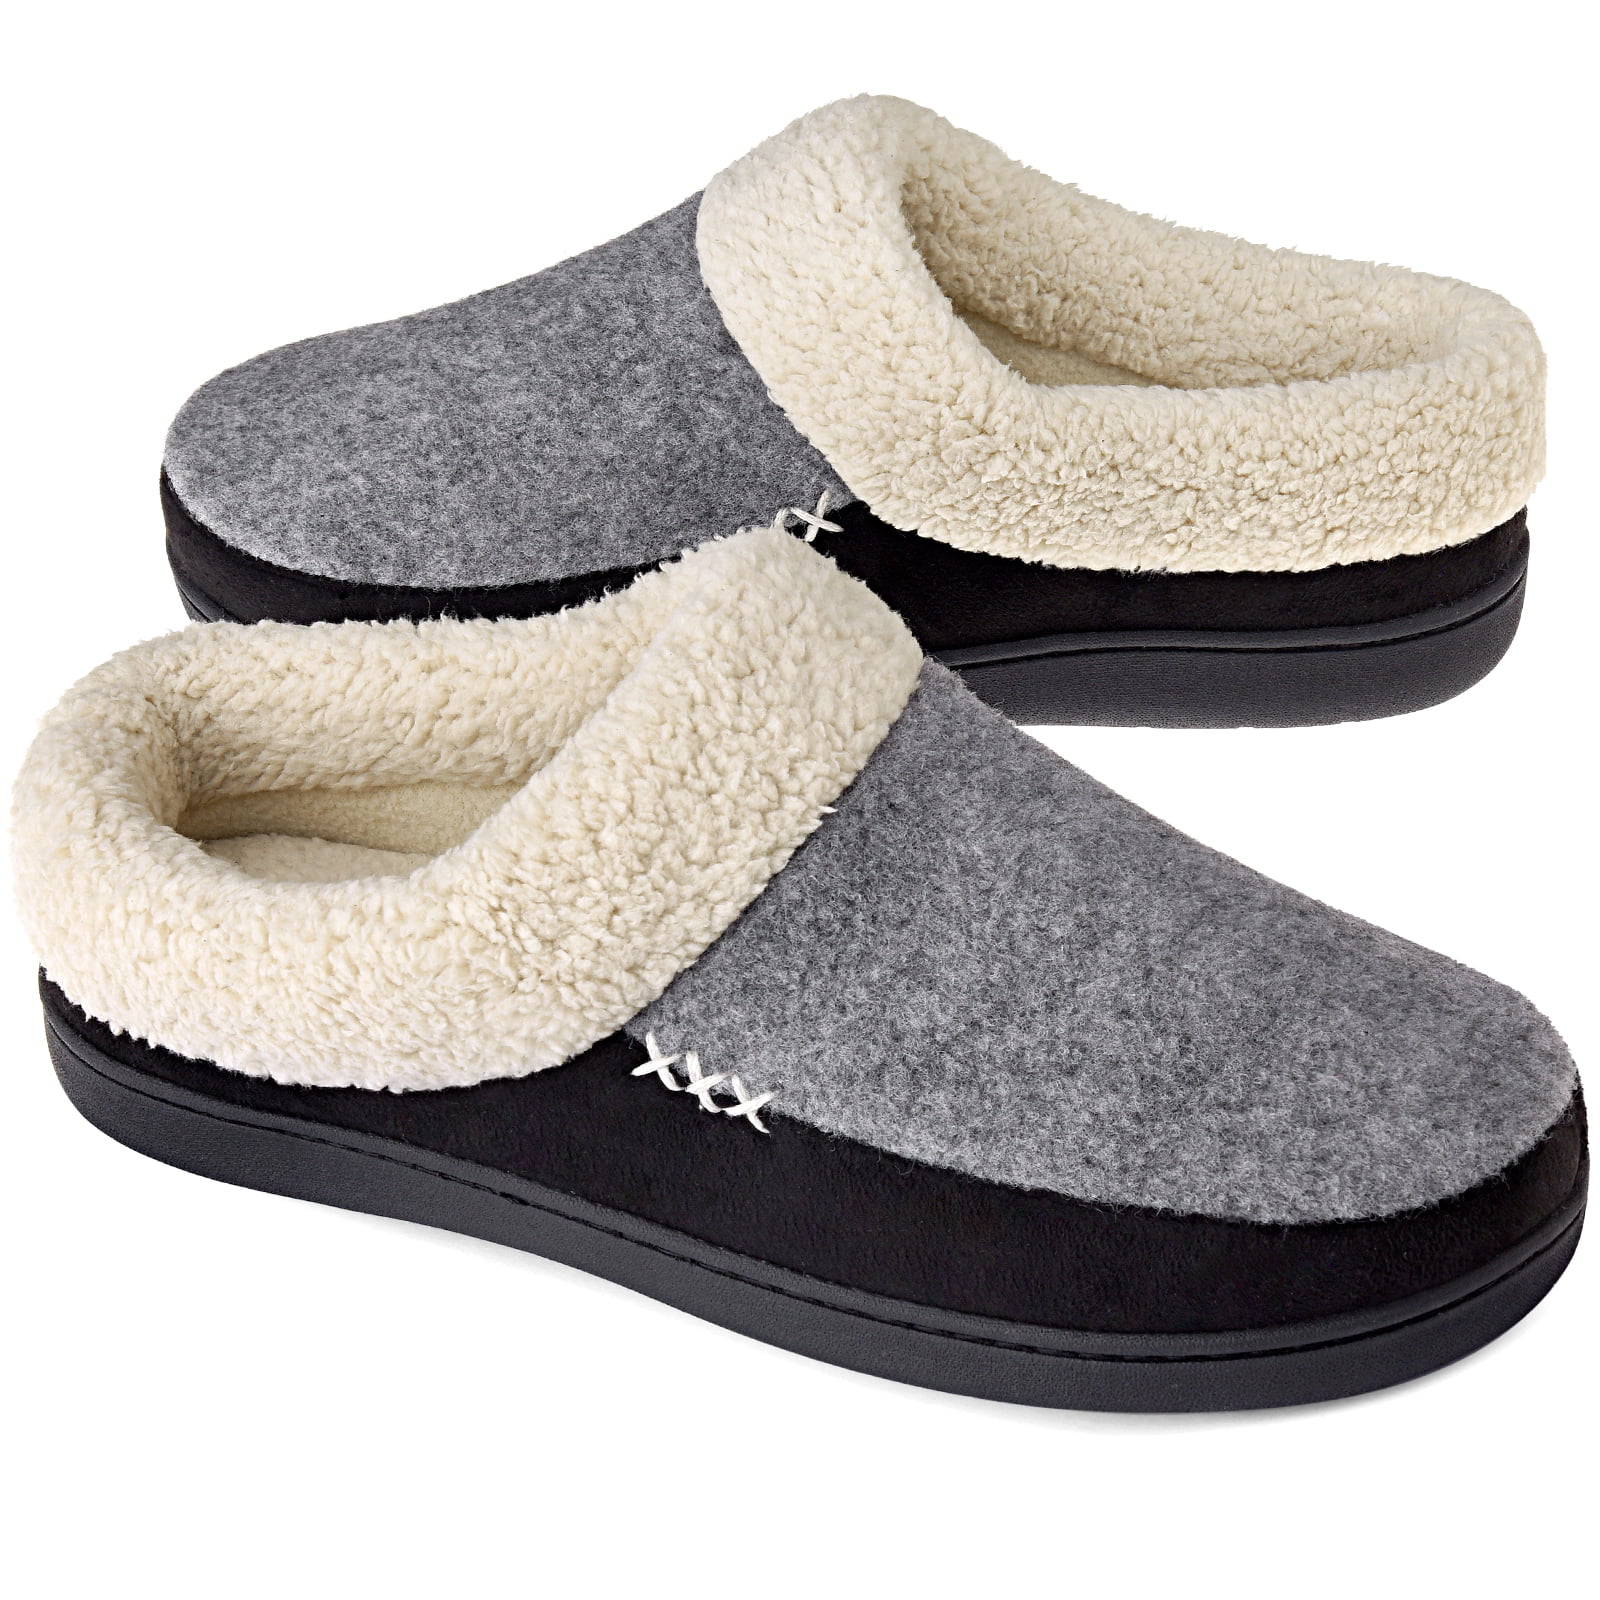 men's plush house slippers